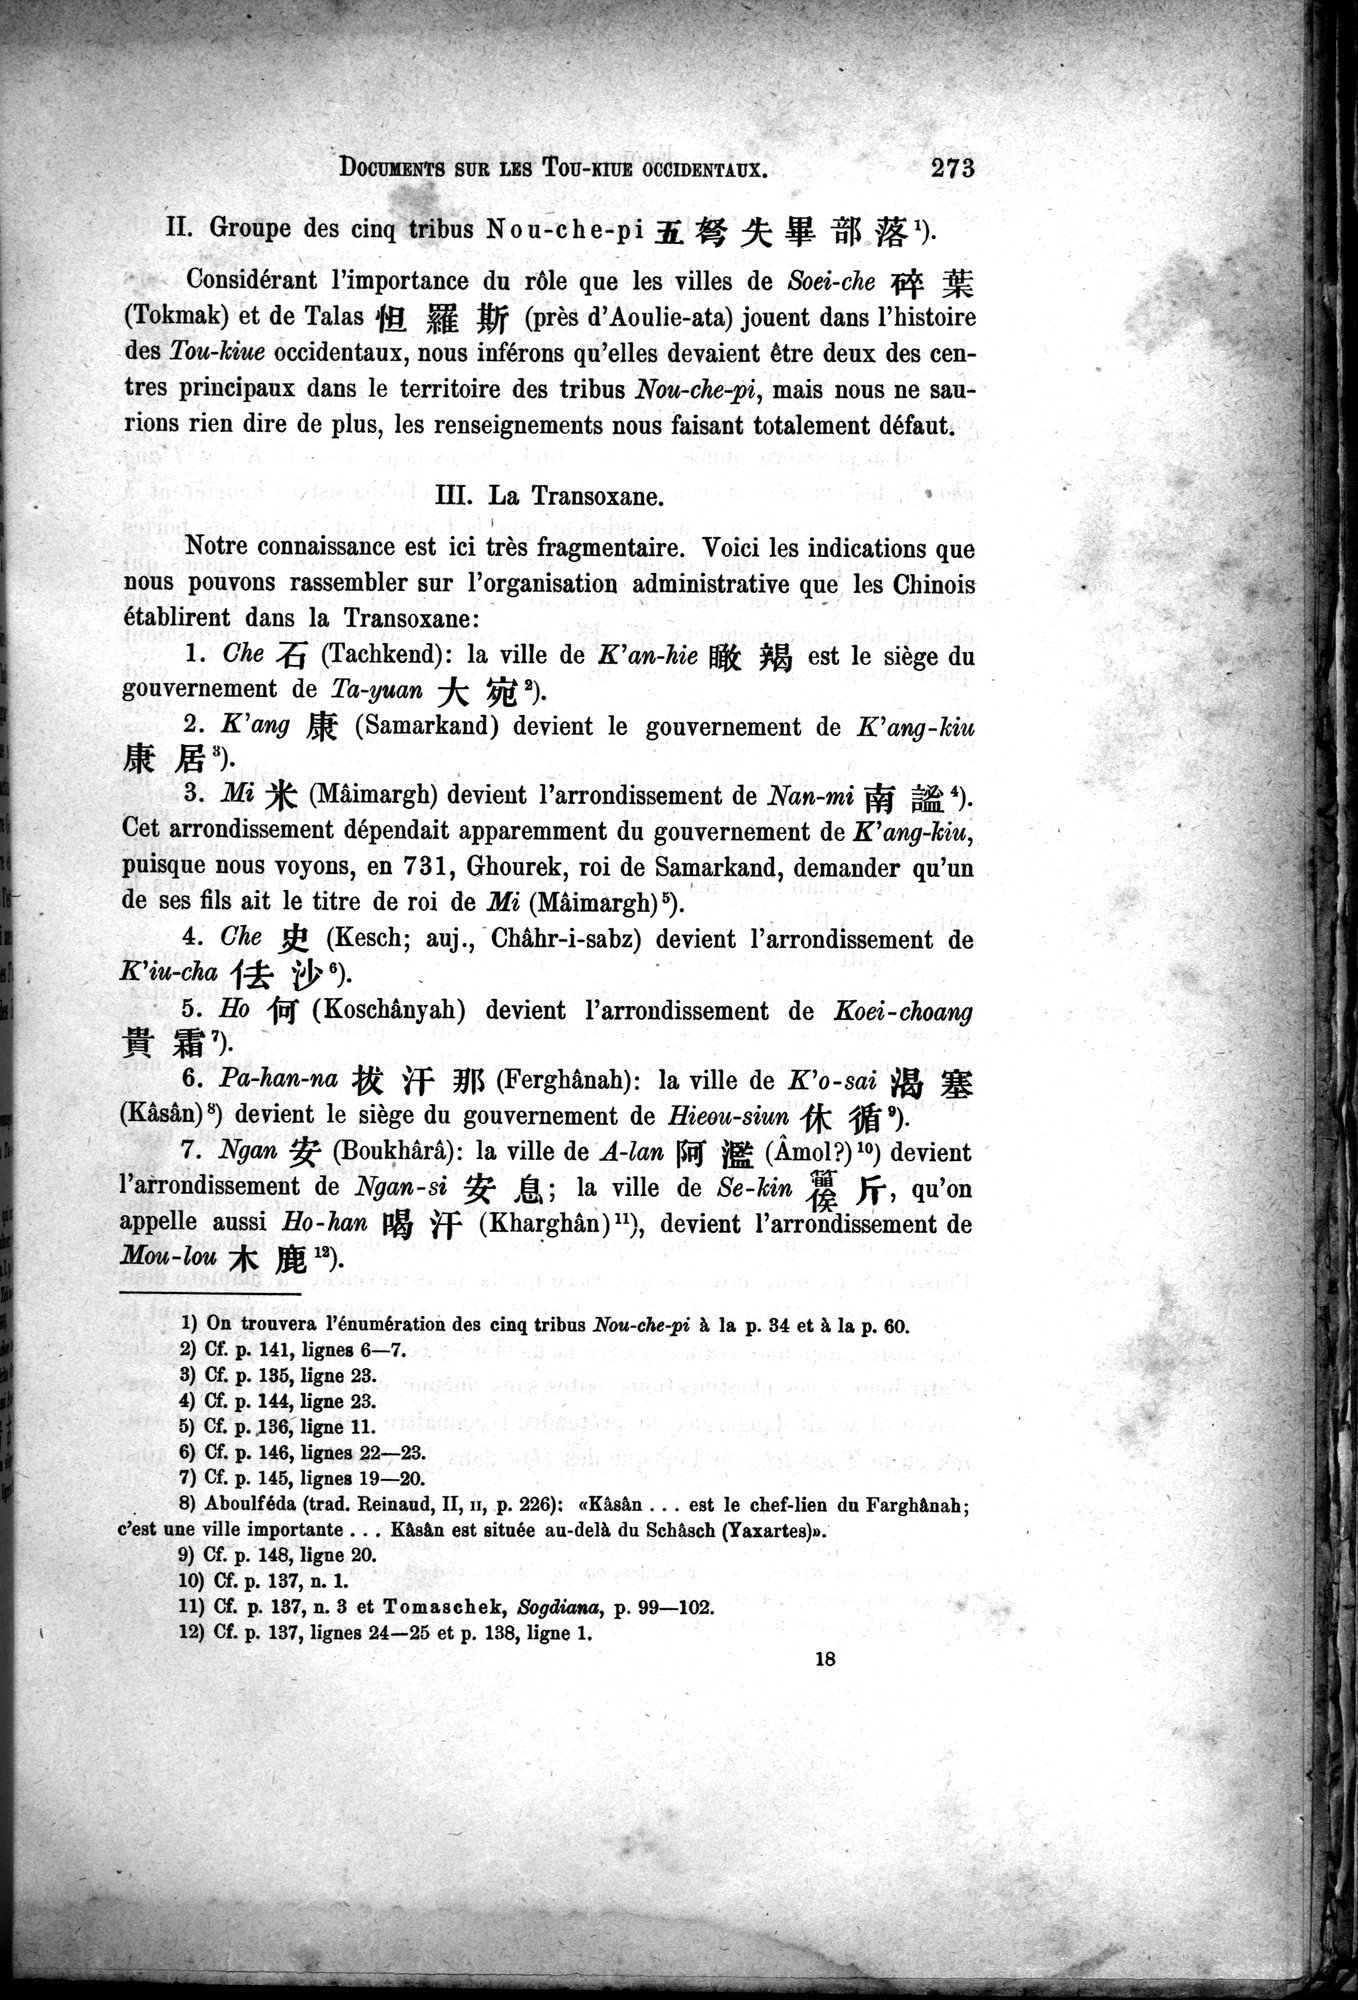 Documents sur les Tou-kiue (Turcs) occidentaux : vol.1 / Page 283 (Grayscale High Resolution Image)